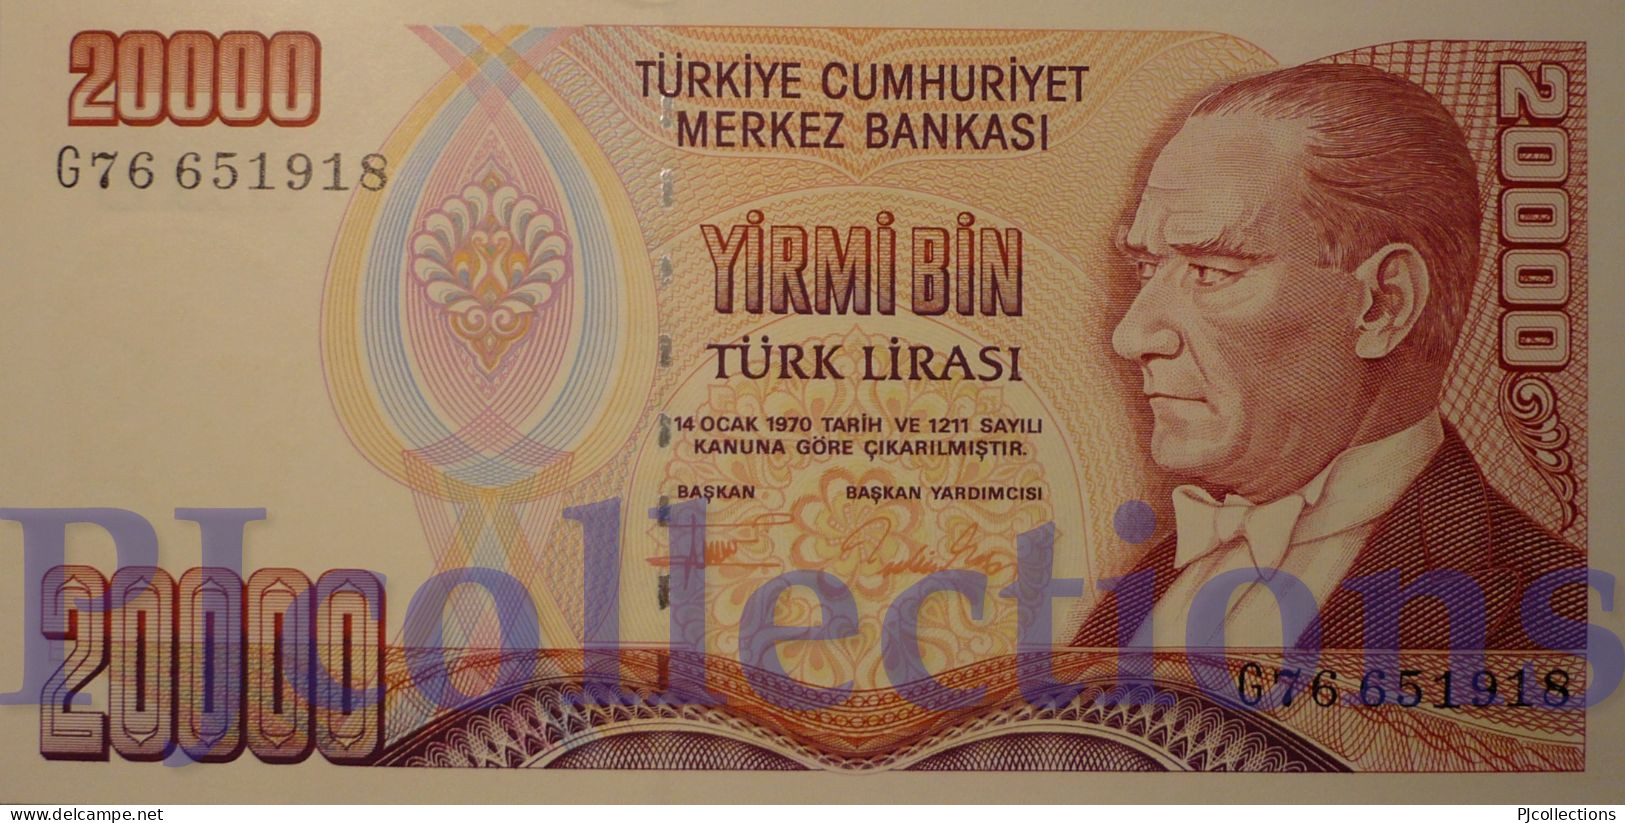 TURKEY 20000 LIRA 1995 PICK 202 UNC - Turchia